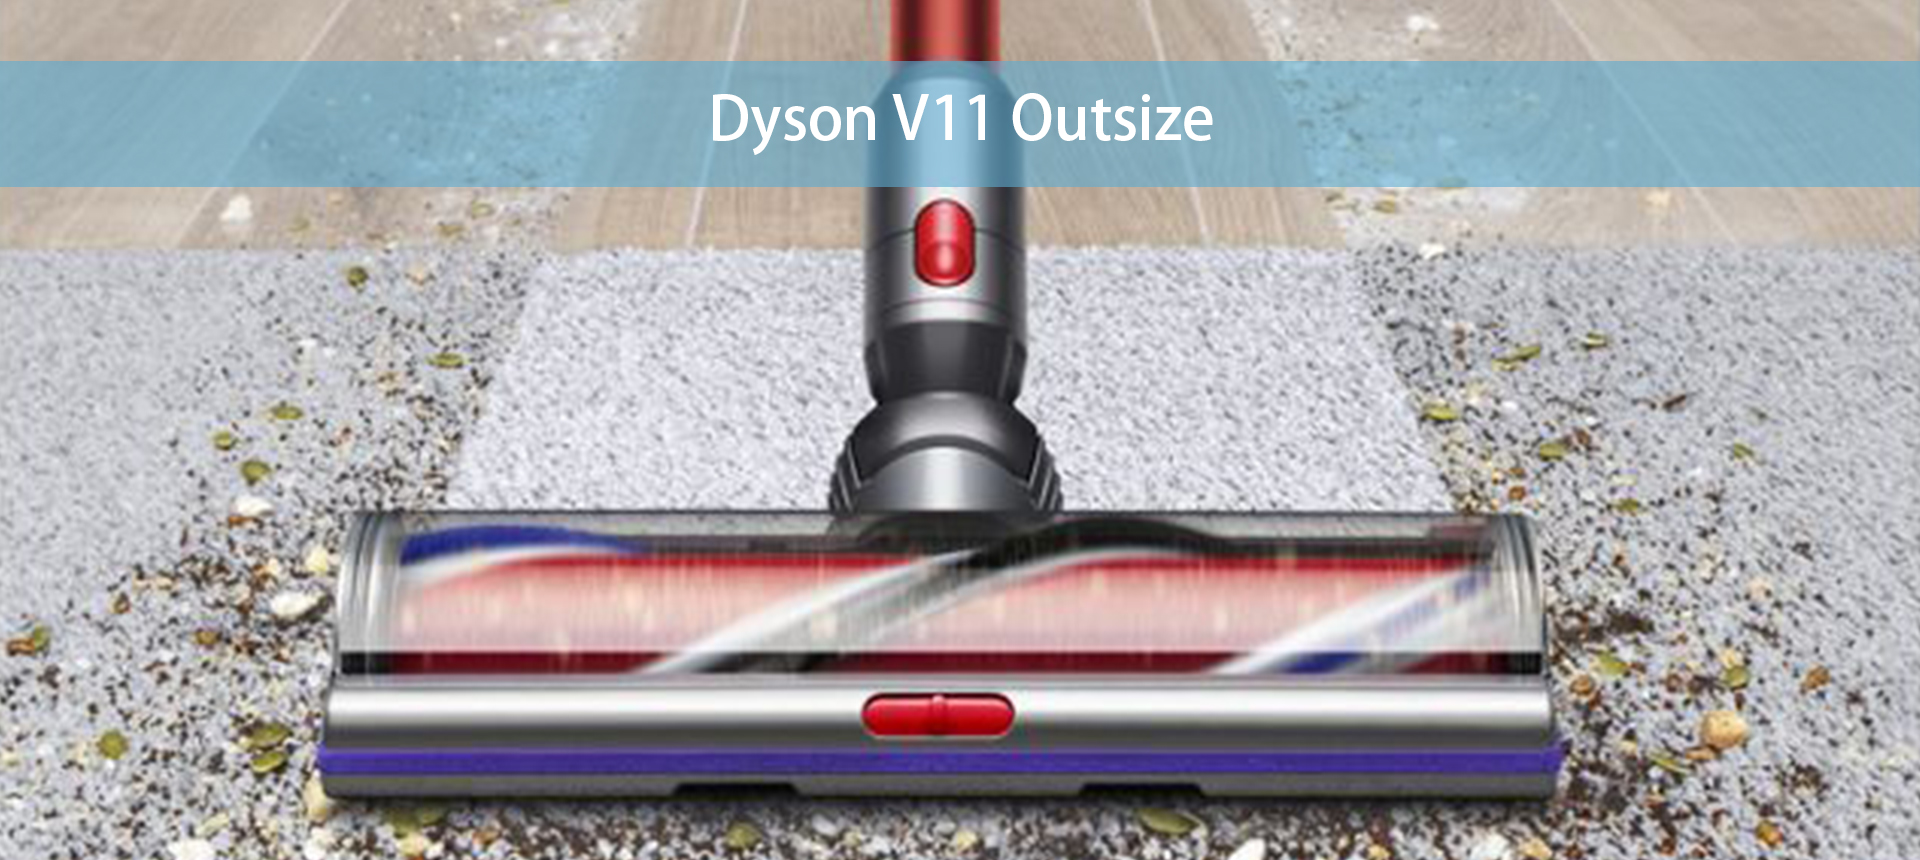 Dyson V11 Outsize